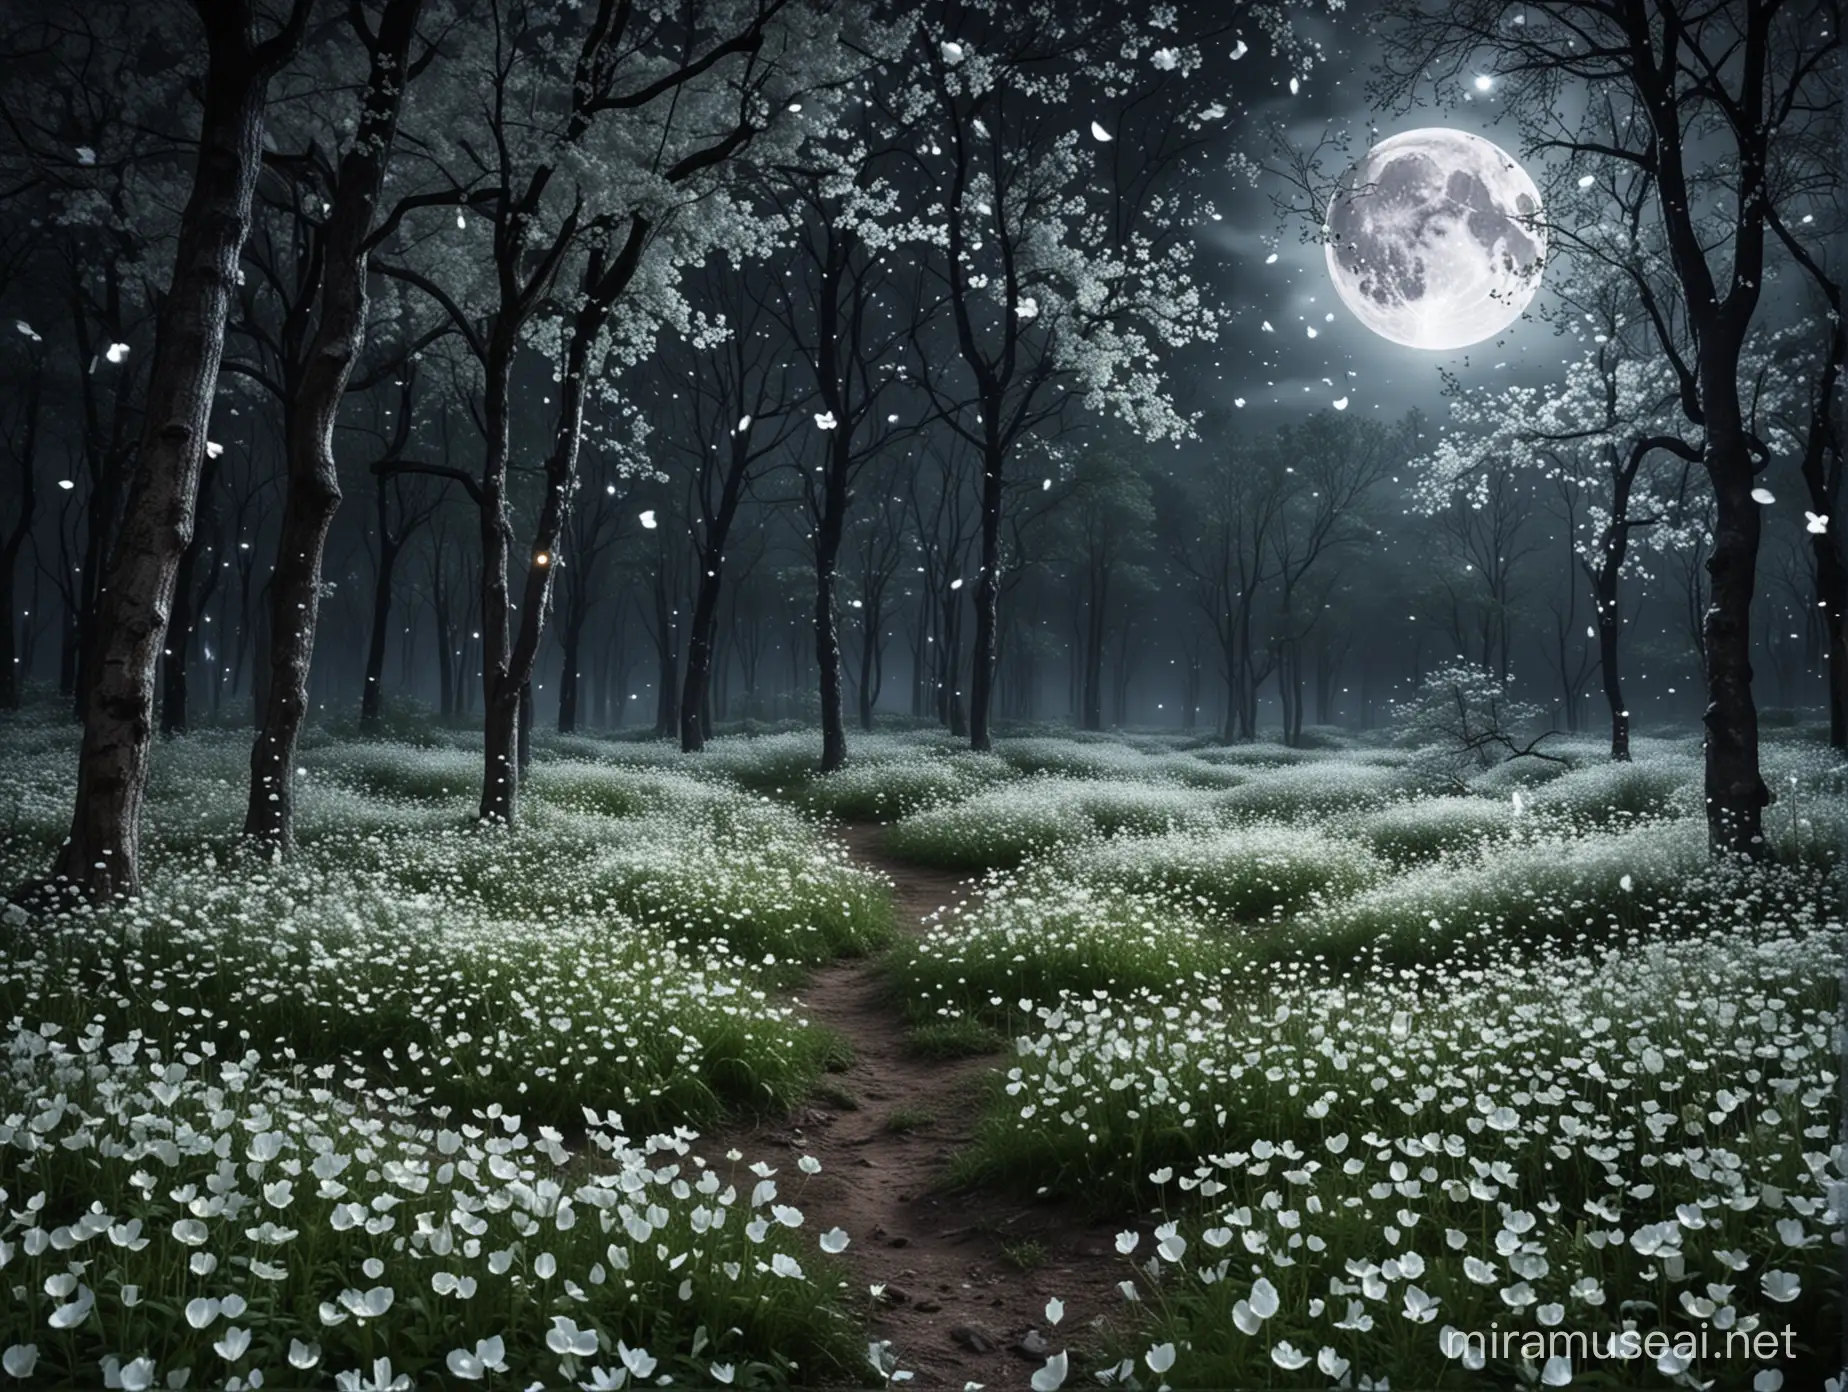 paysage magique forêt pluie de pétales blancs nuit lumineux lune dans le ciel